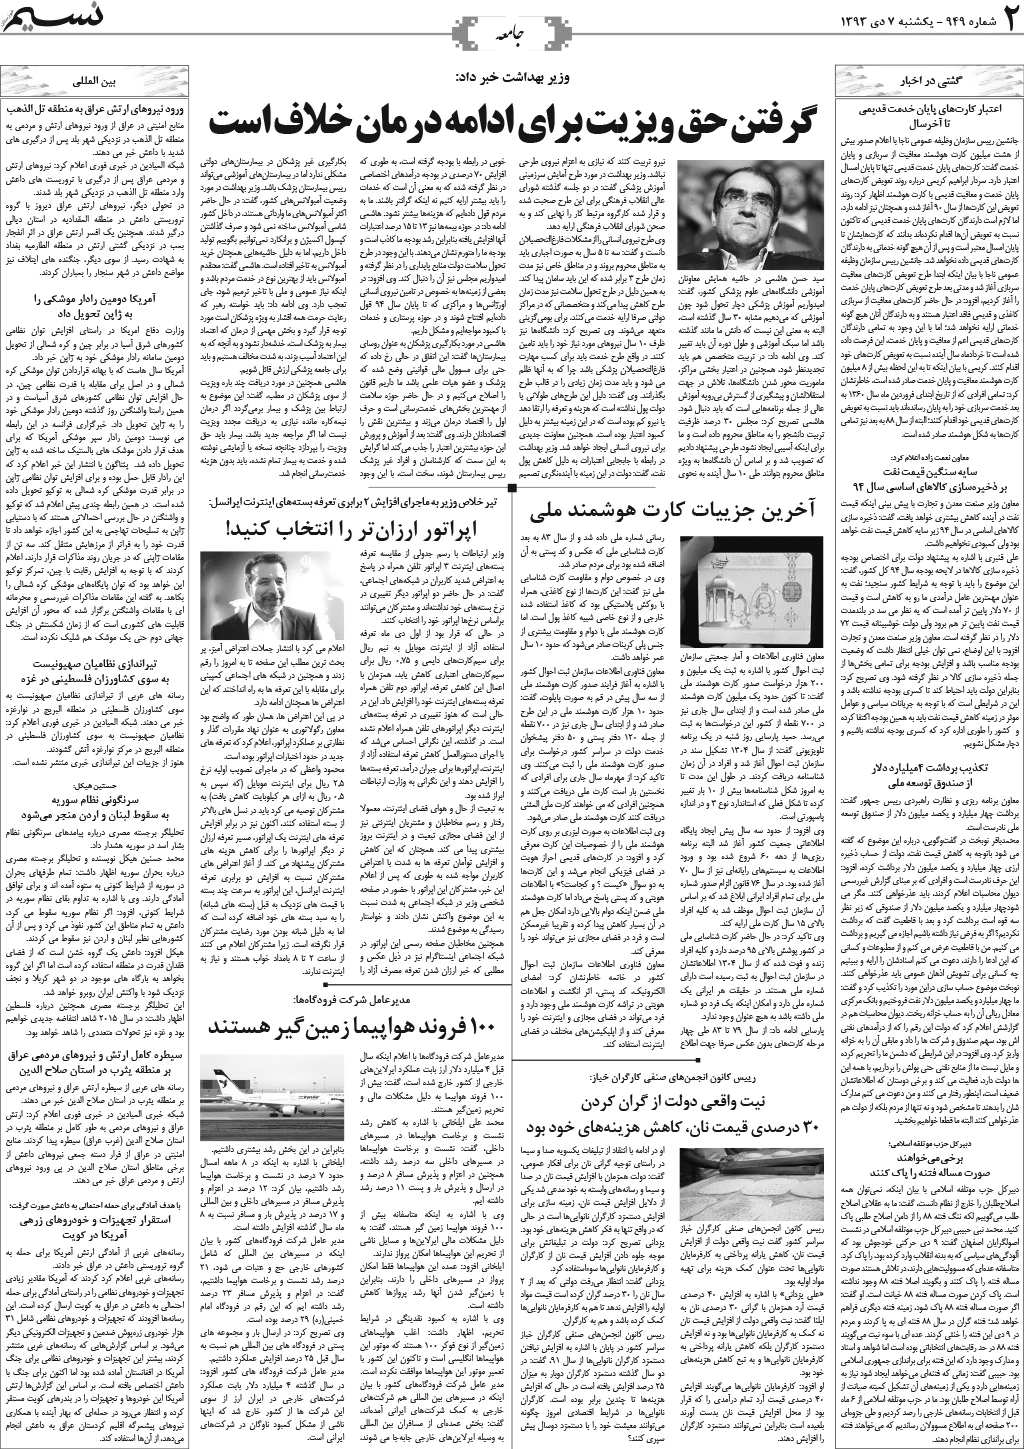 صفحه جامعه روزنامه نسیم شماره 949